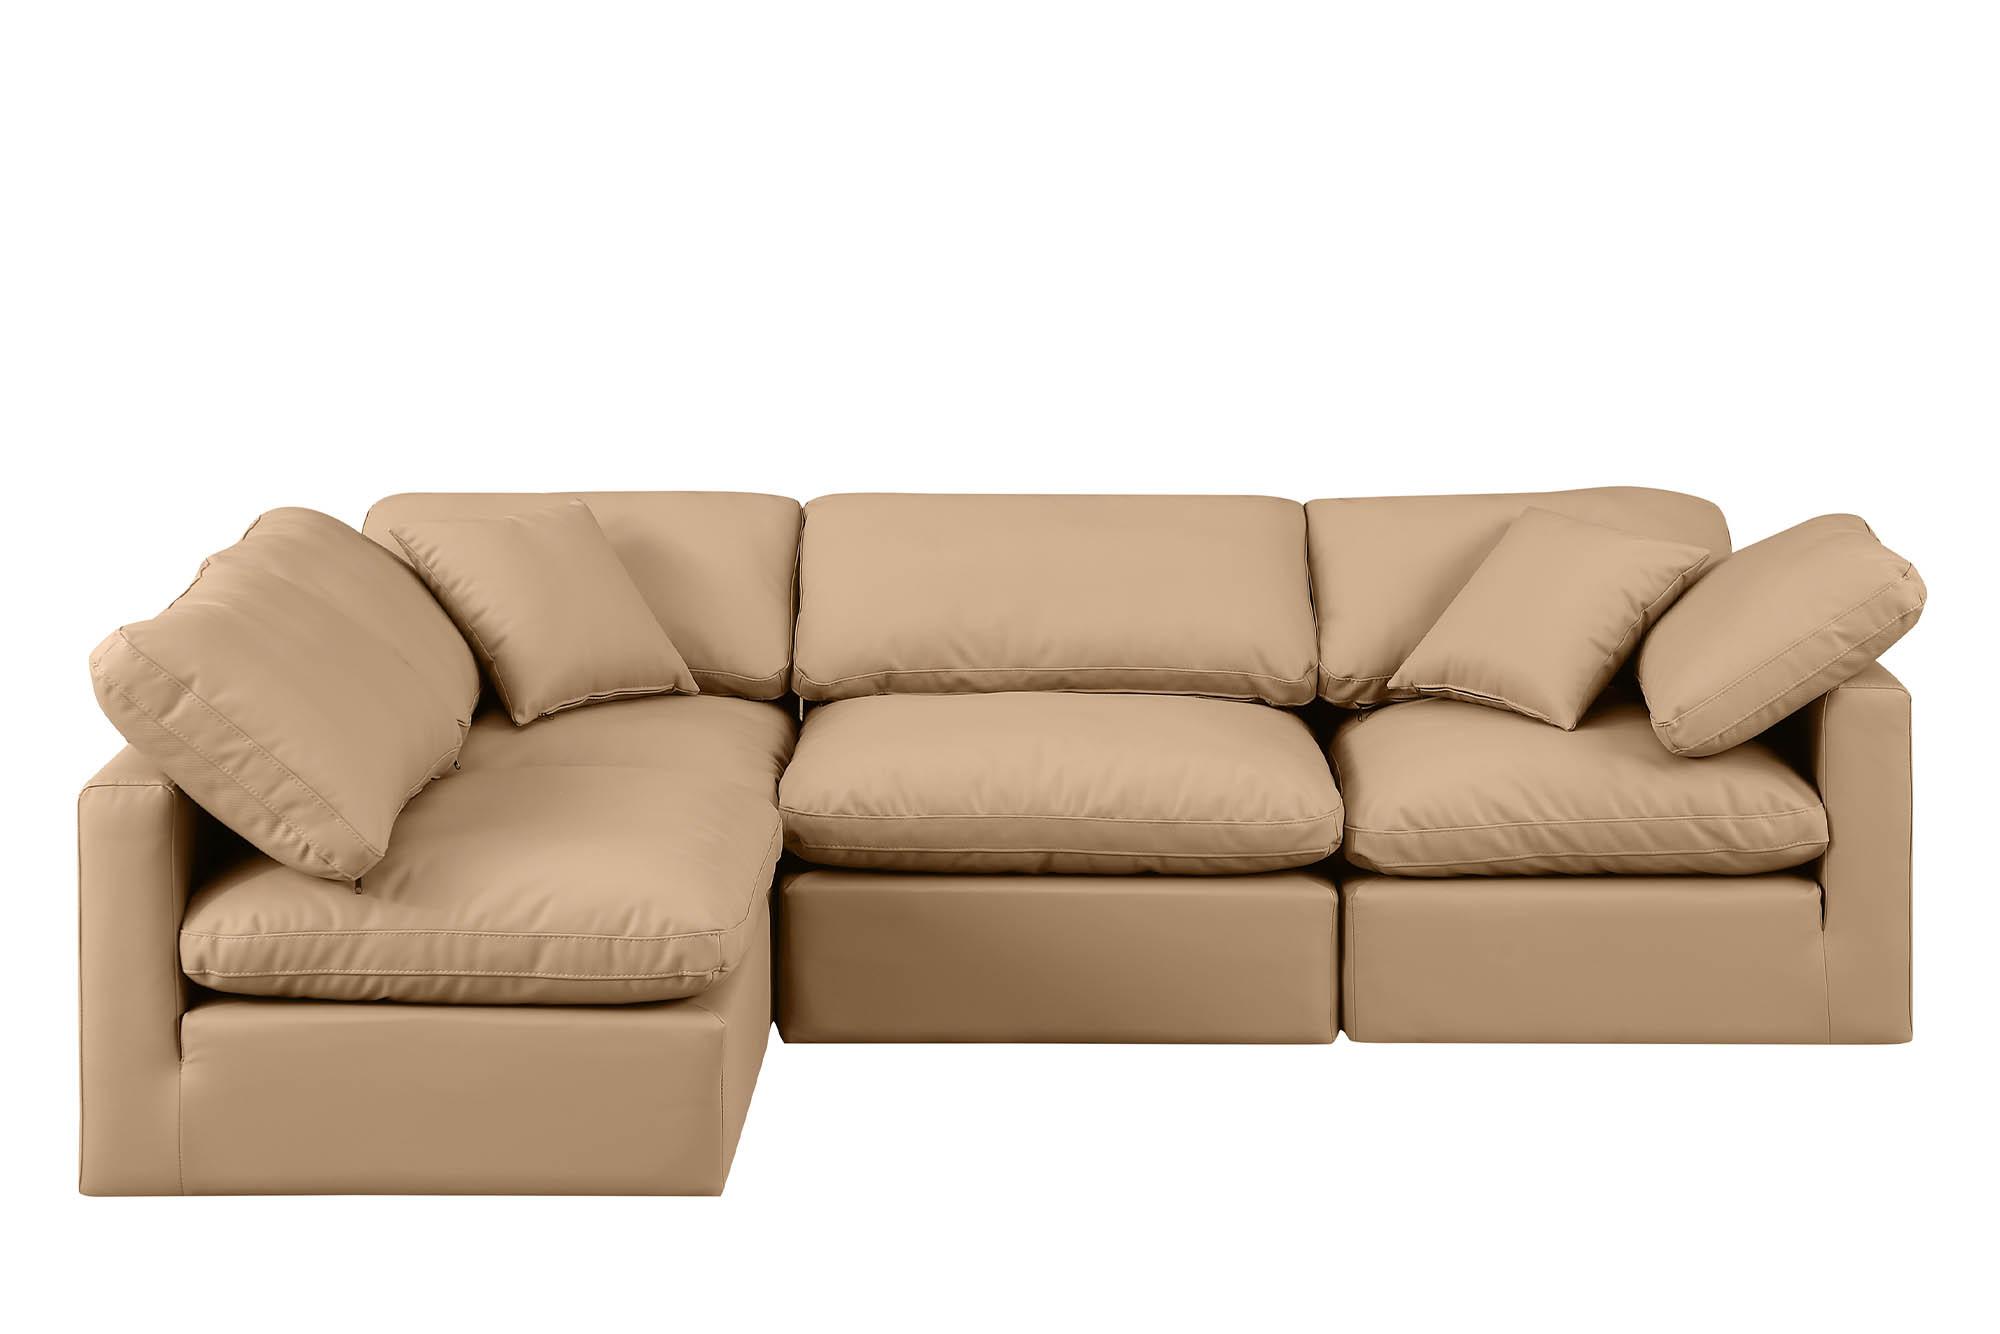 

    
Meridian Furniture INDULGE 146Tan-Sec4B Modular Sectional Sofa Tan 146Tan-Sec4B
